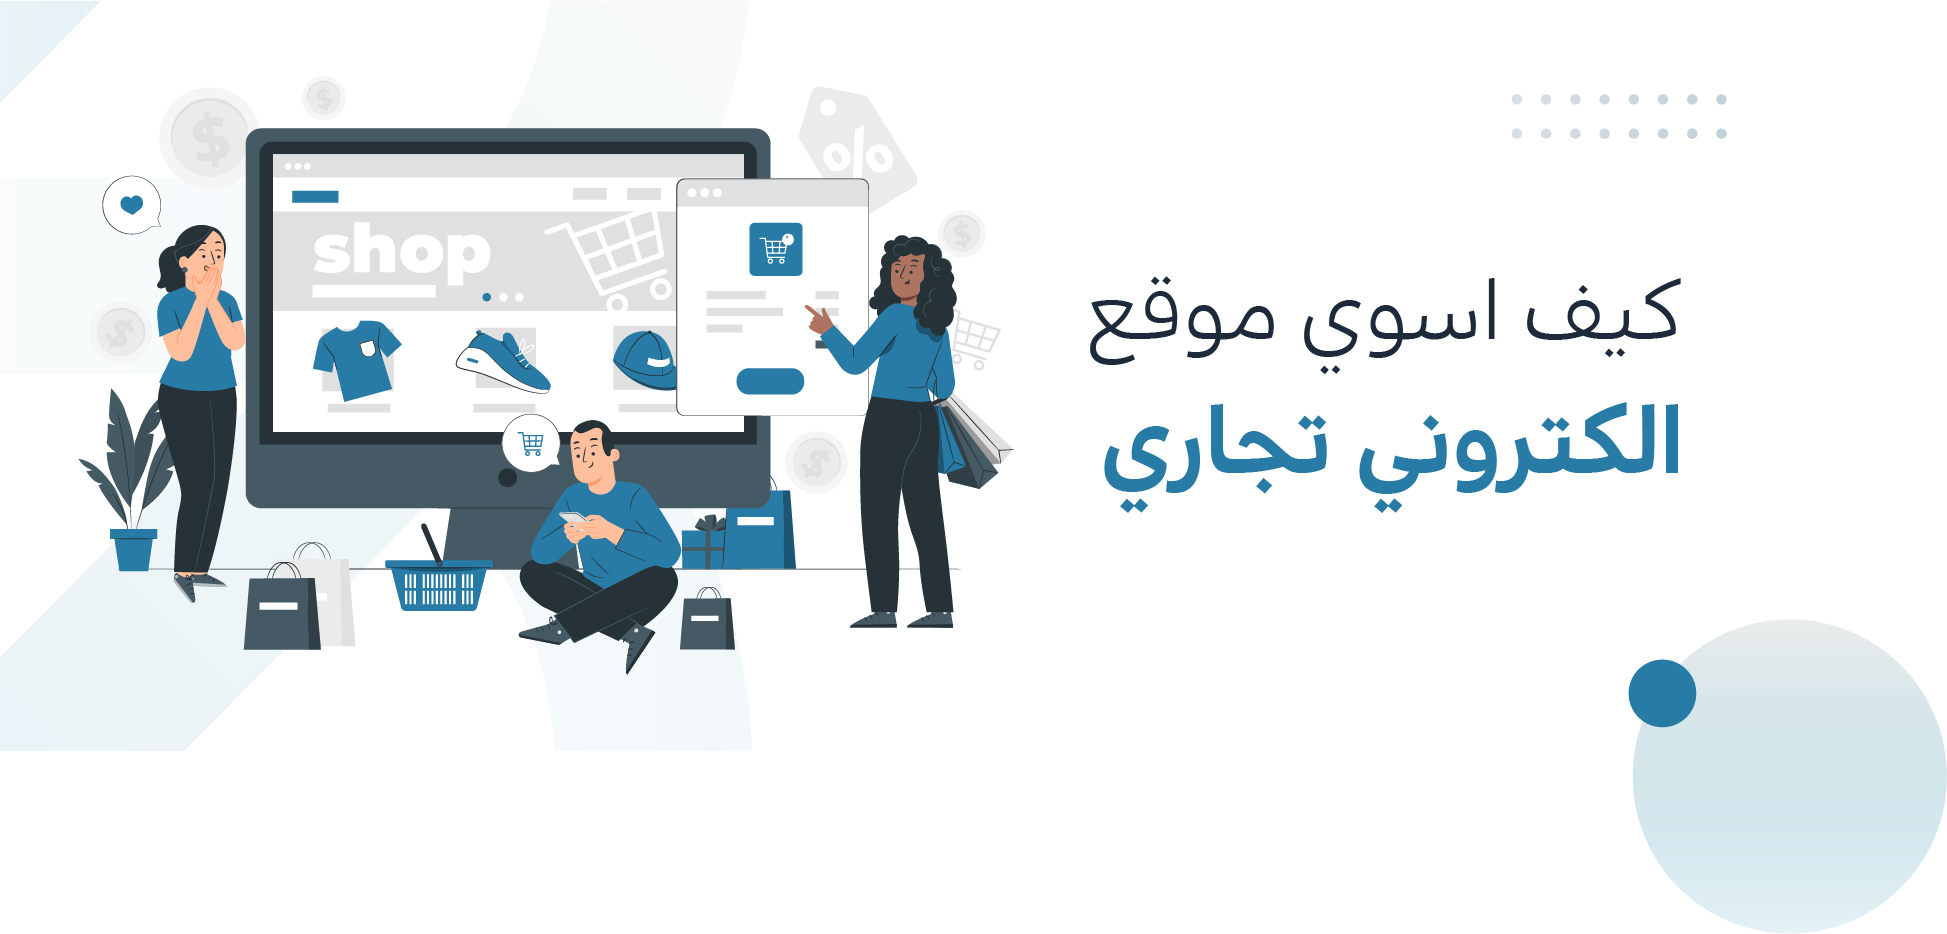 كيف اسوي موقع الكتروني تجاري في السعودية في 9 خطوات